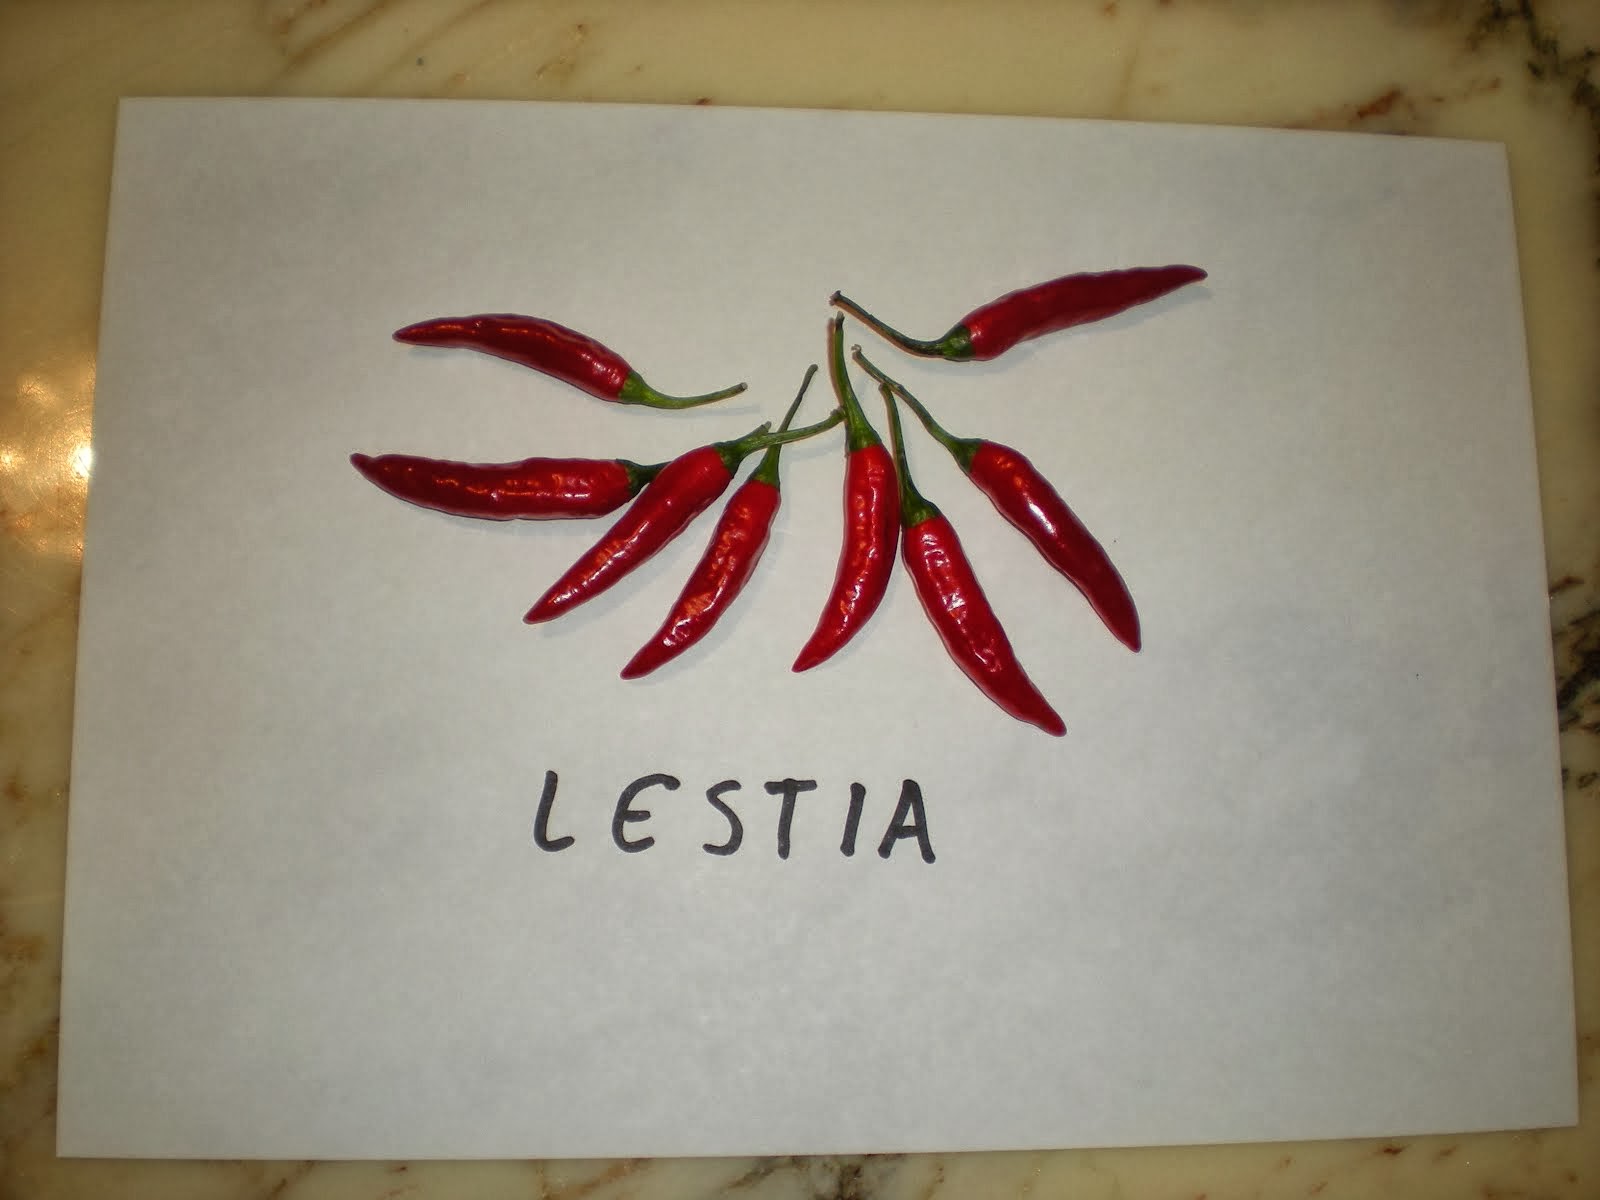 Lestia